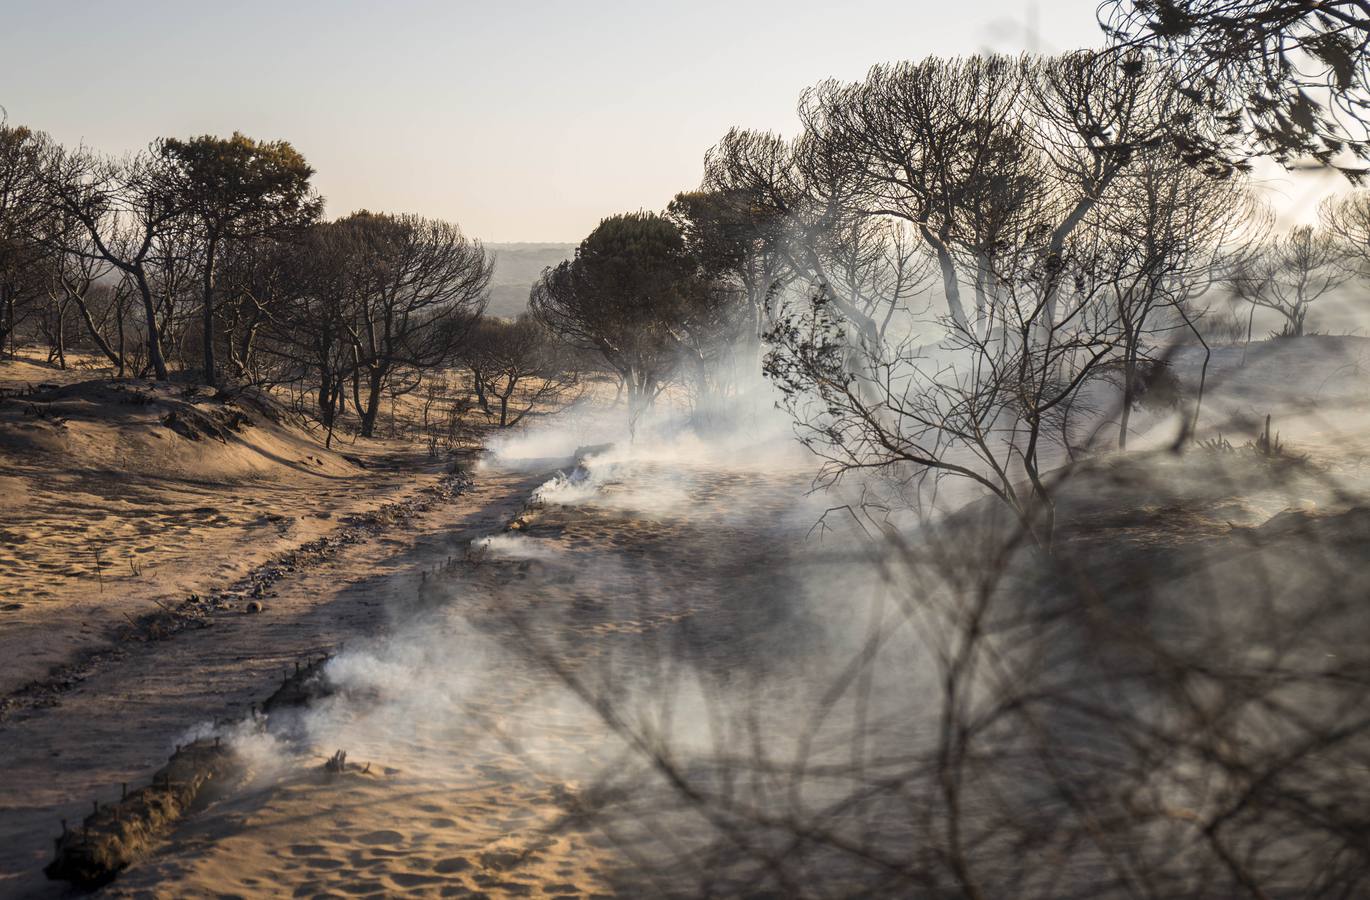 Los estragos del incendio en Doñana, en imágenes